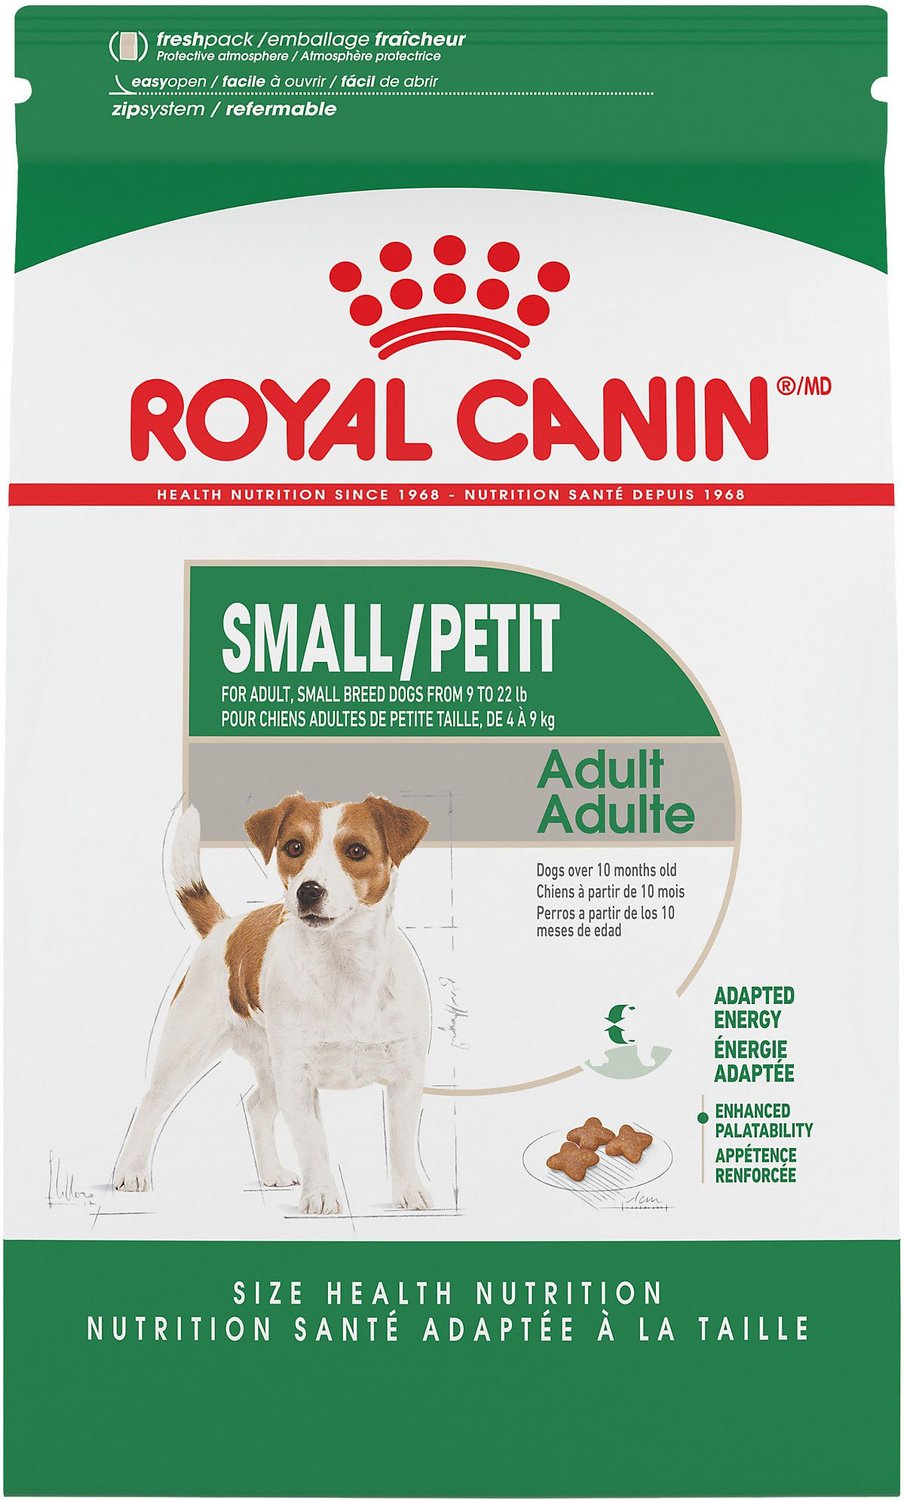 Royal Canin Mini Adult Formula Dog Dry Food, 14lb bag